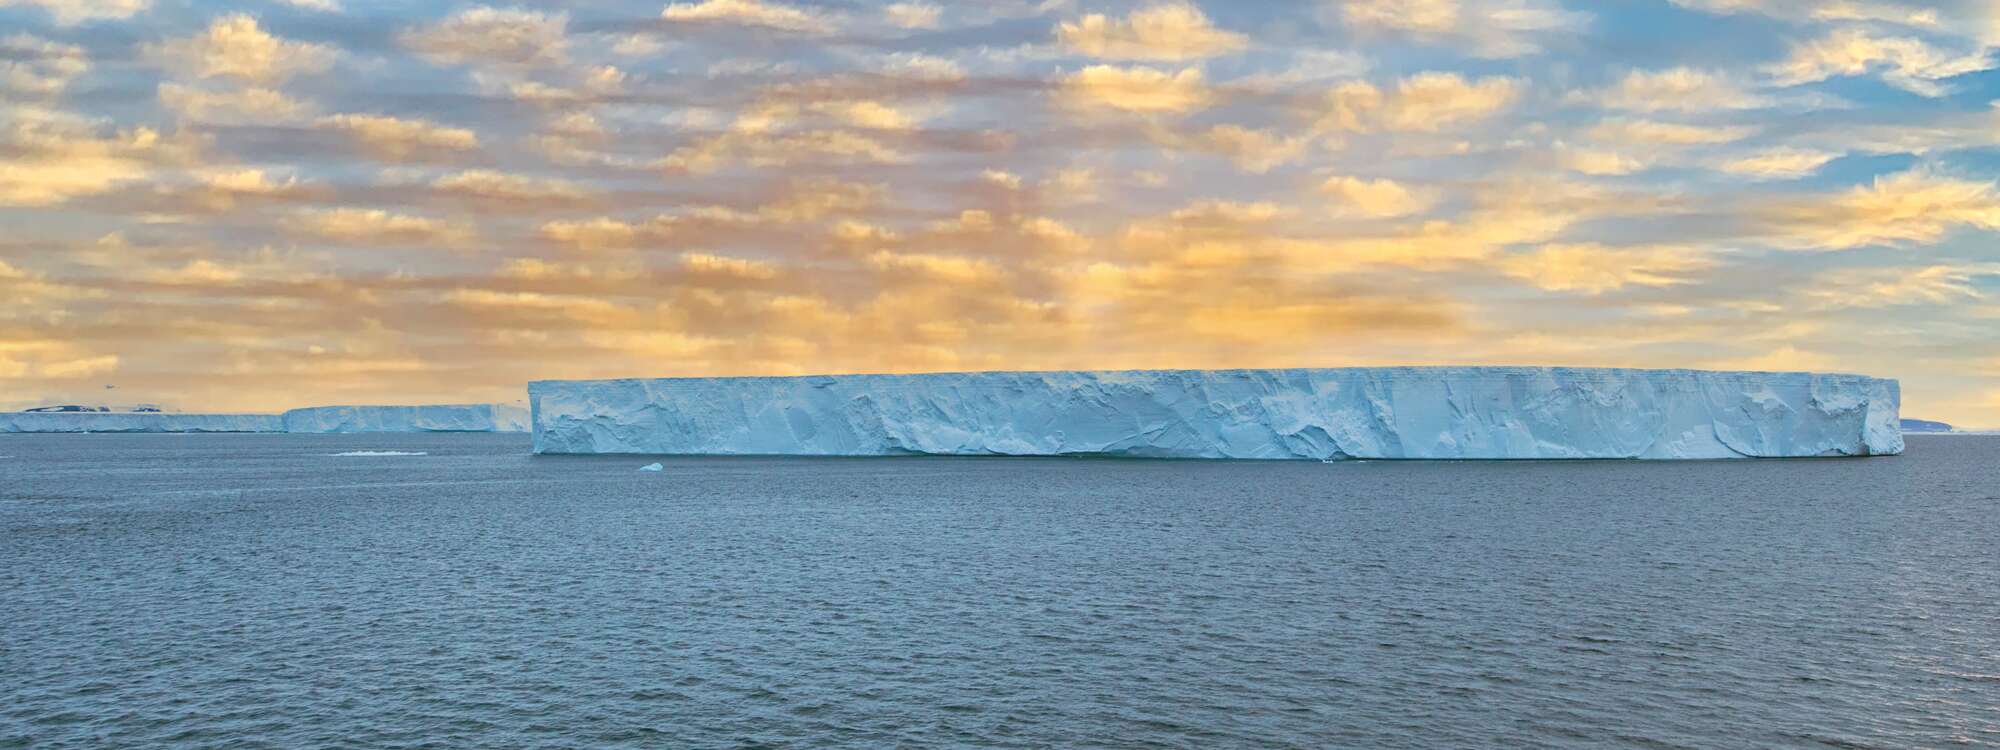 Eisberg, Bransfield Strait, zwischen den Südlichen Shetlandinseln und der Antarktischen Halbinsel in der Antarktis